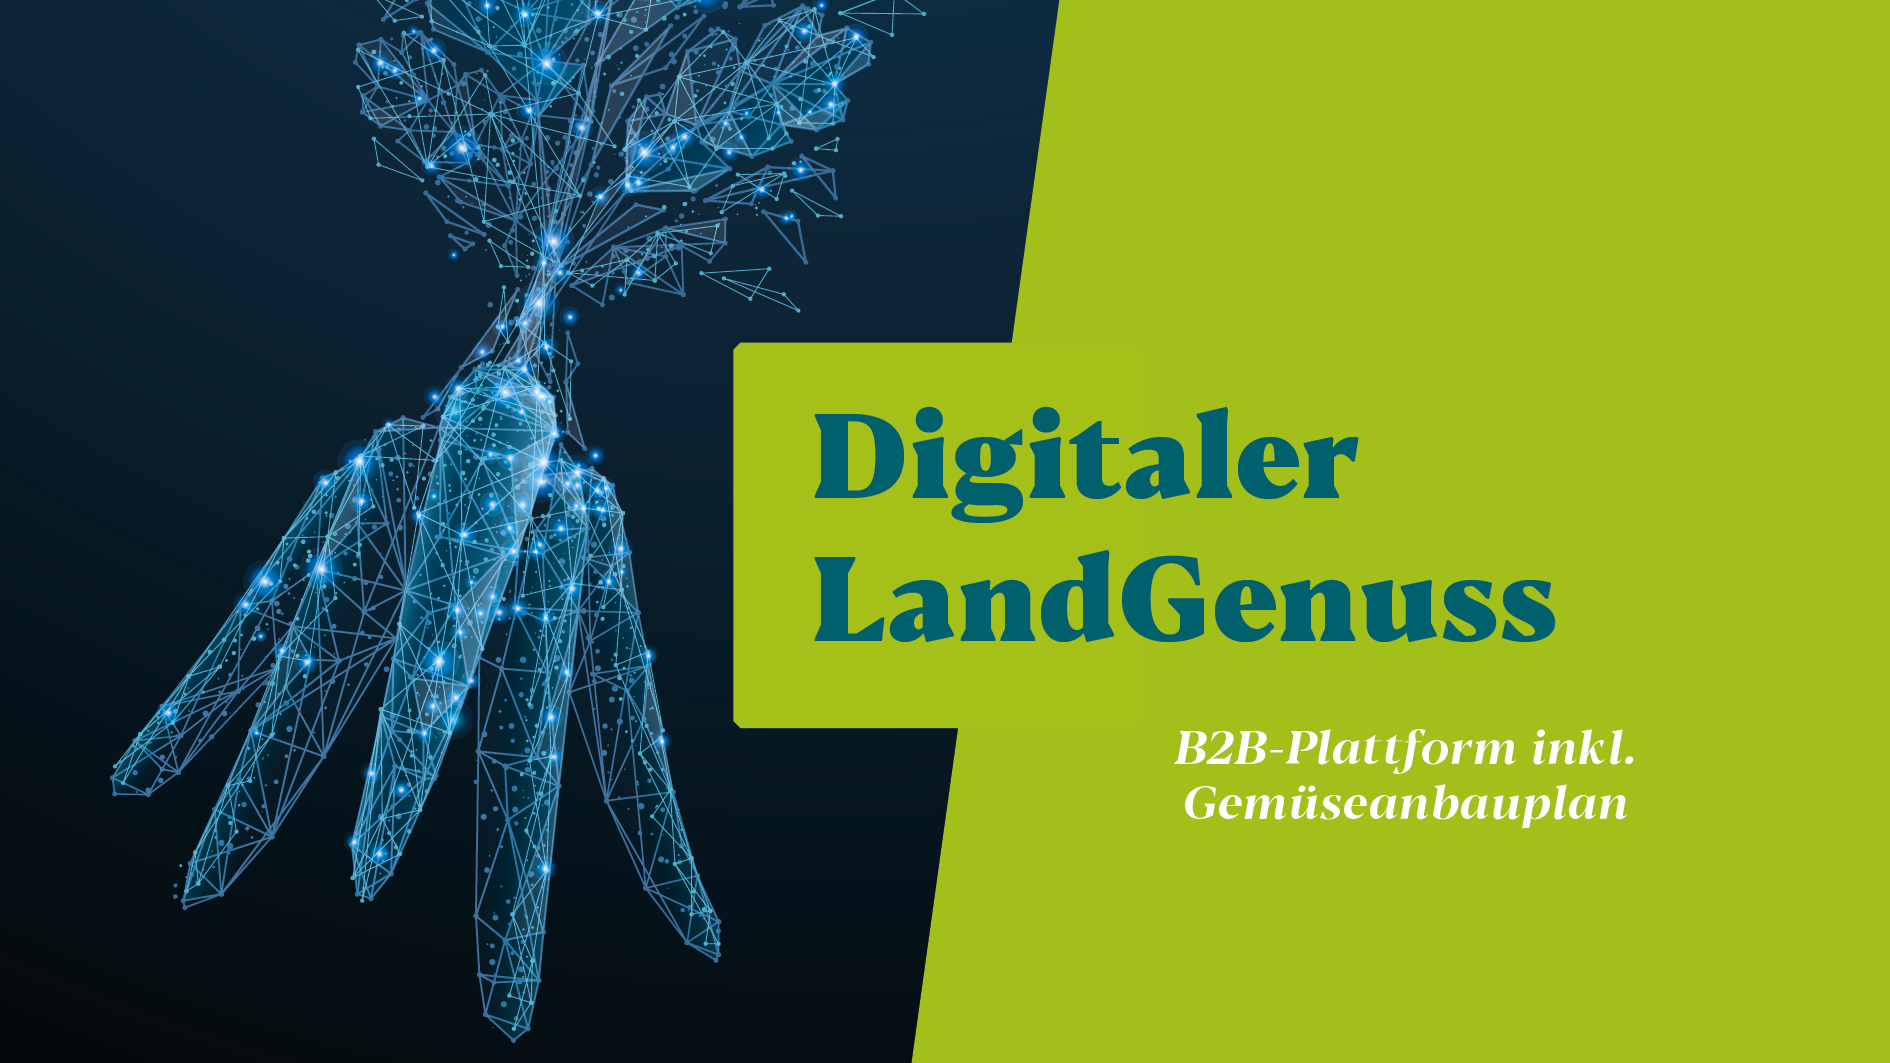 Digitaler LandGenuss